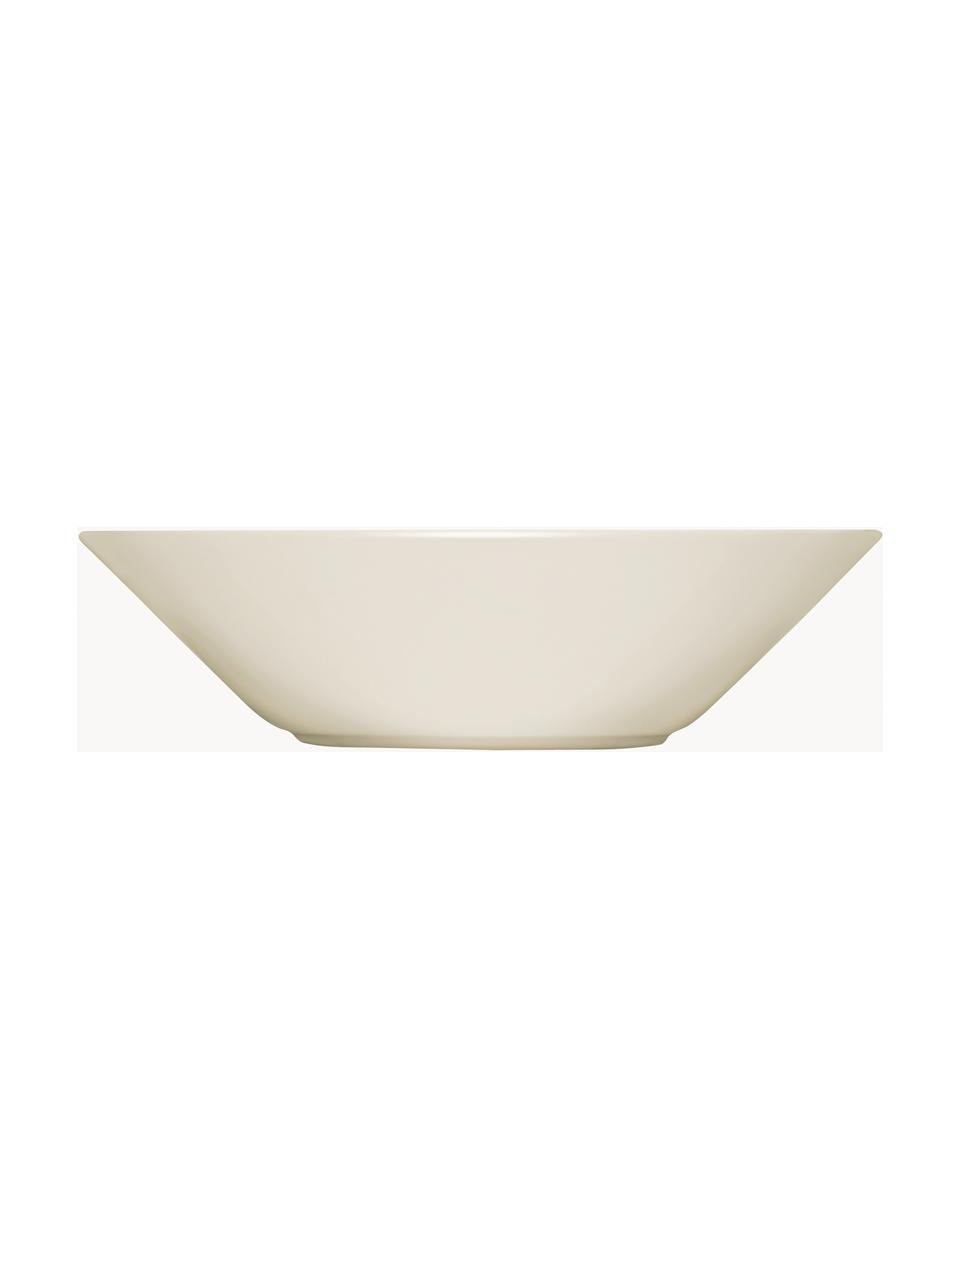 Assiette creuse en porcelaine Teema, Vitro-porcelaine, Blanc cassé, Ø 22 cm